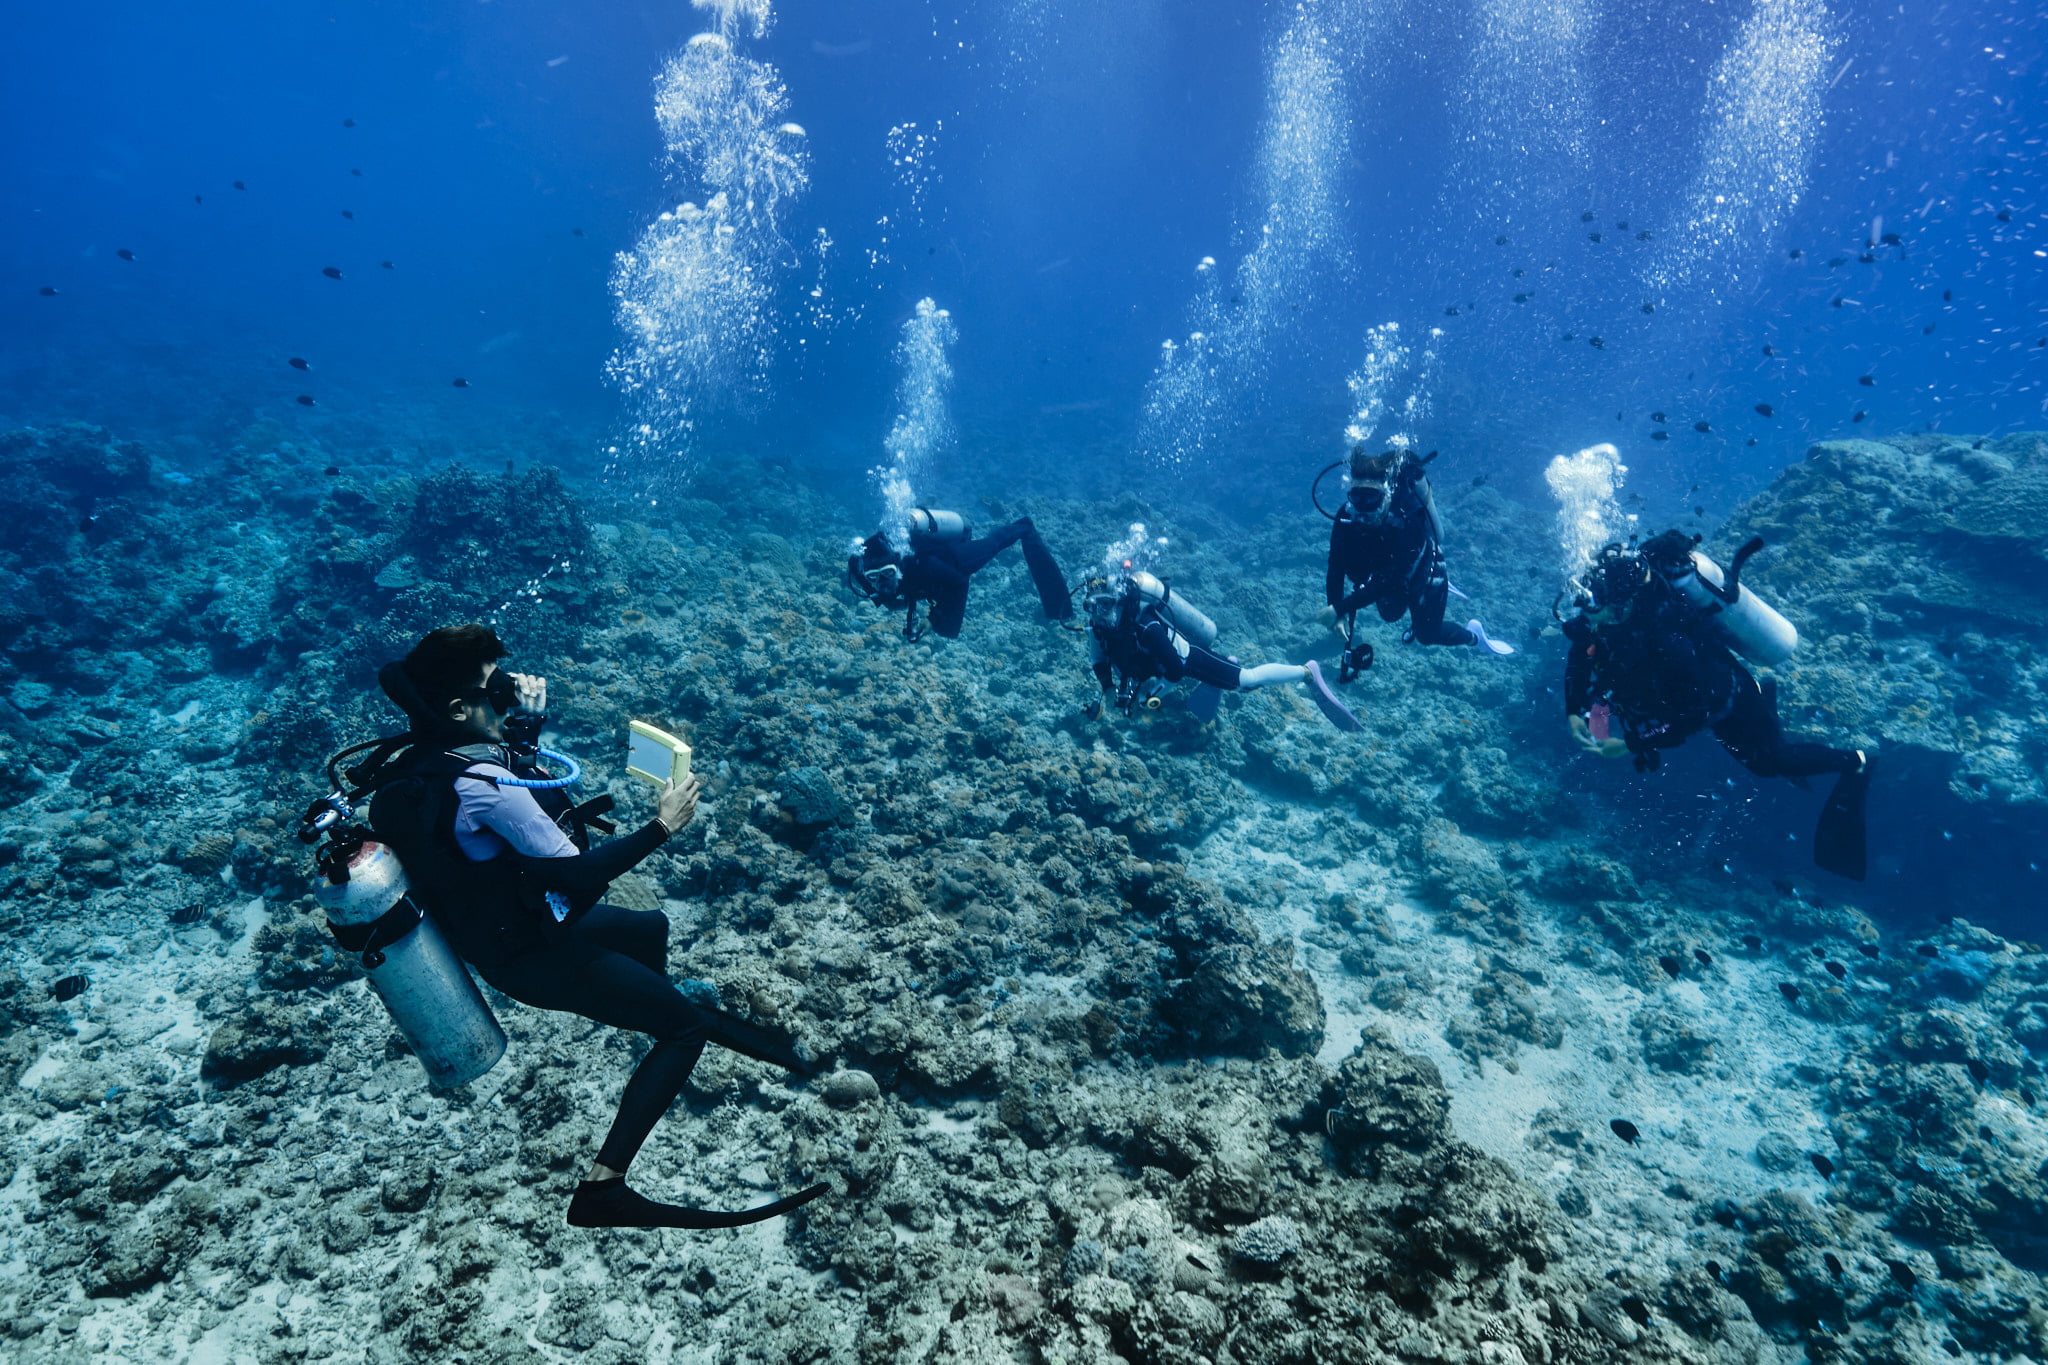 頂尖中性浮力探險潛水課程中能讓您複習之前學到的知識且更深化對浮力變化的理解。